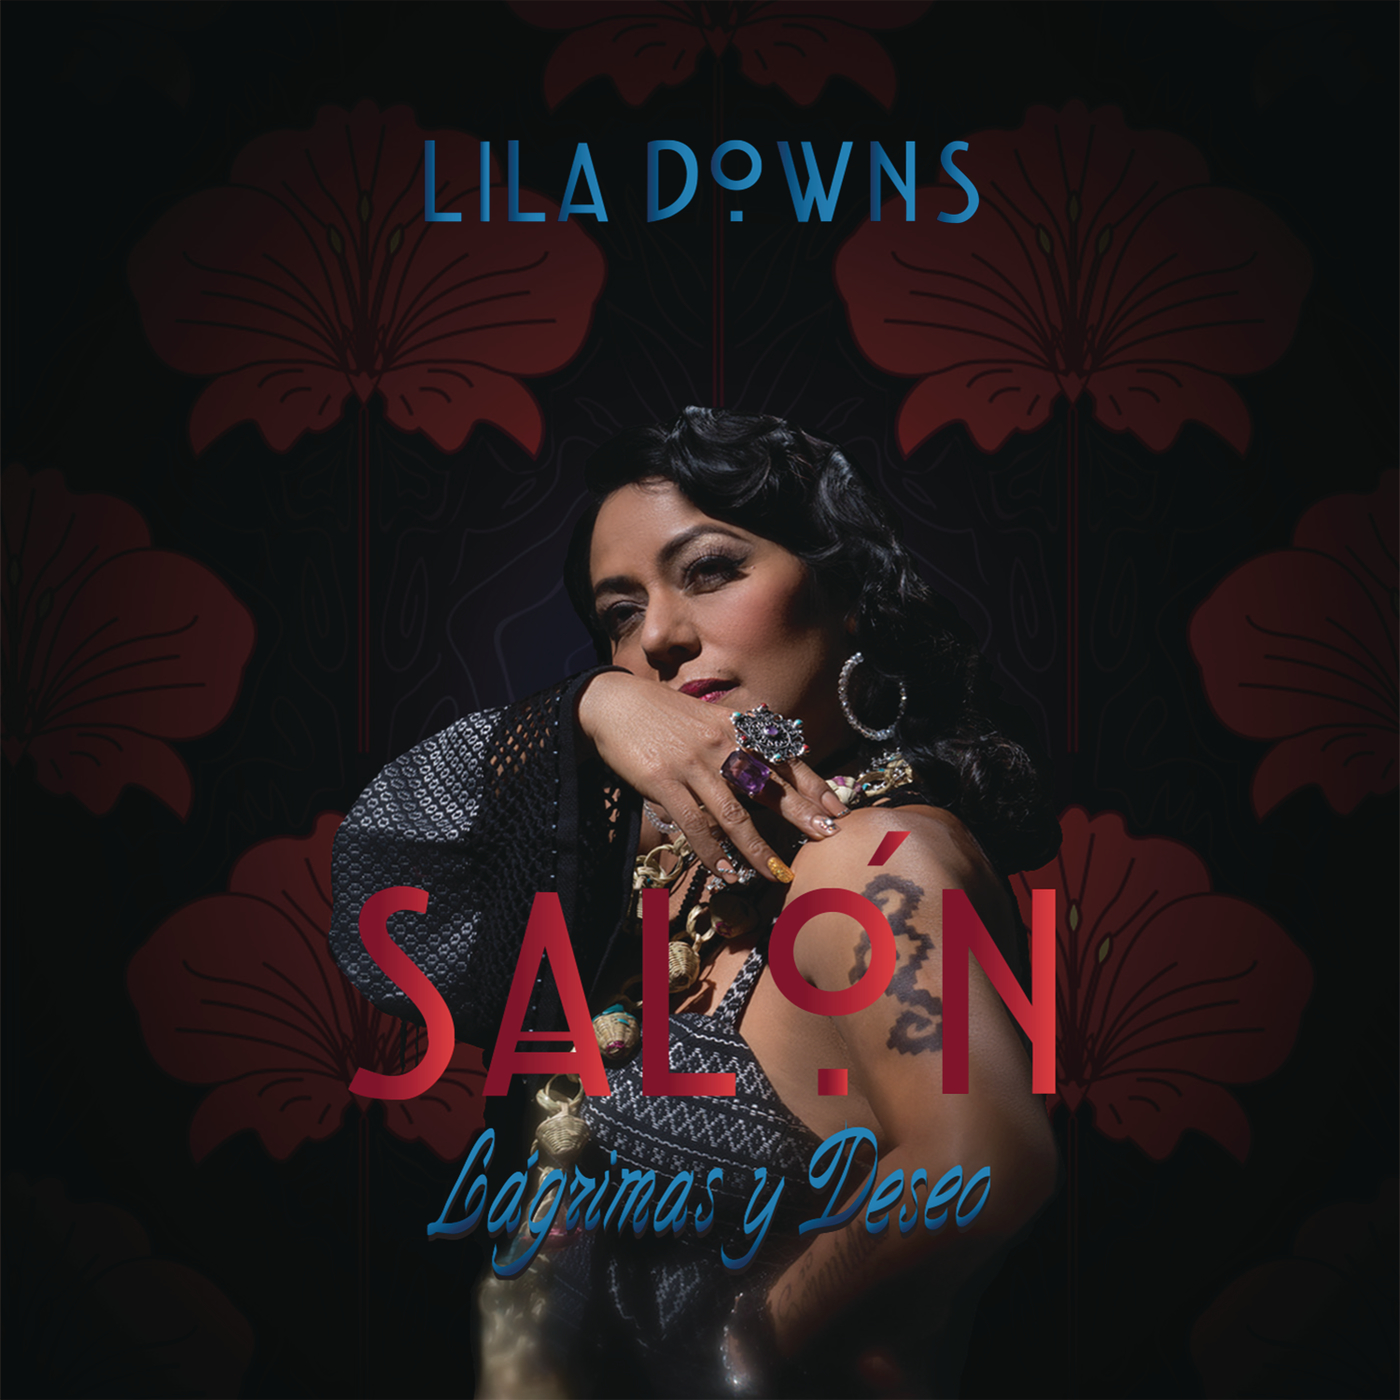 Lila Downs - Salón, lagrimas y deseo